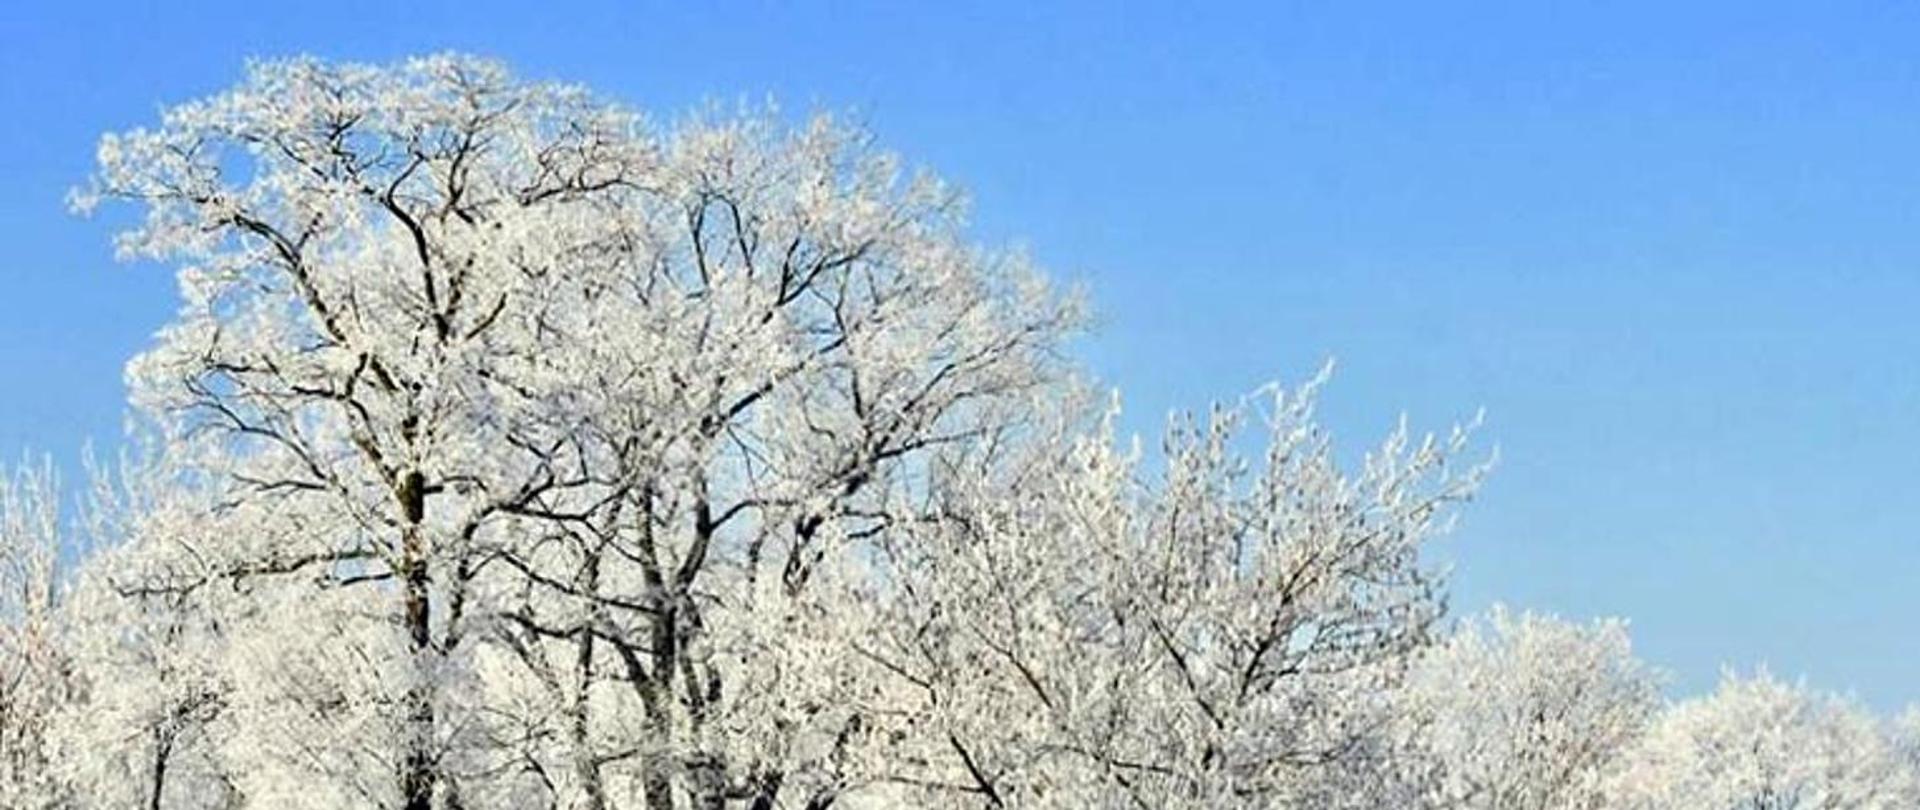 Obraz przedstawia zamarznięte drzewa na tle niebieskiego nieba